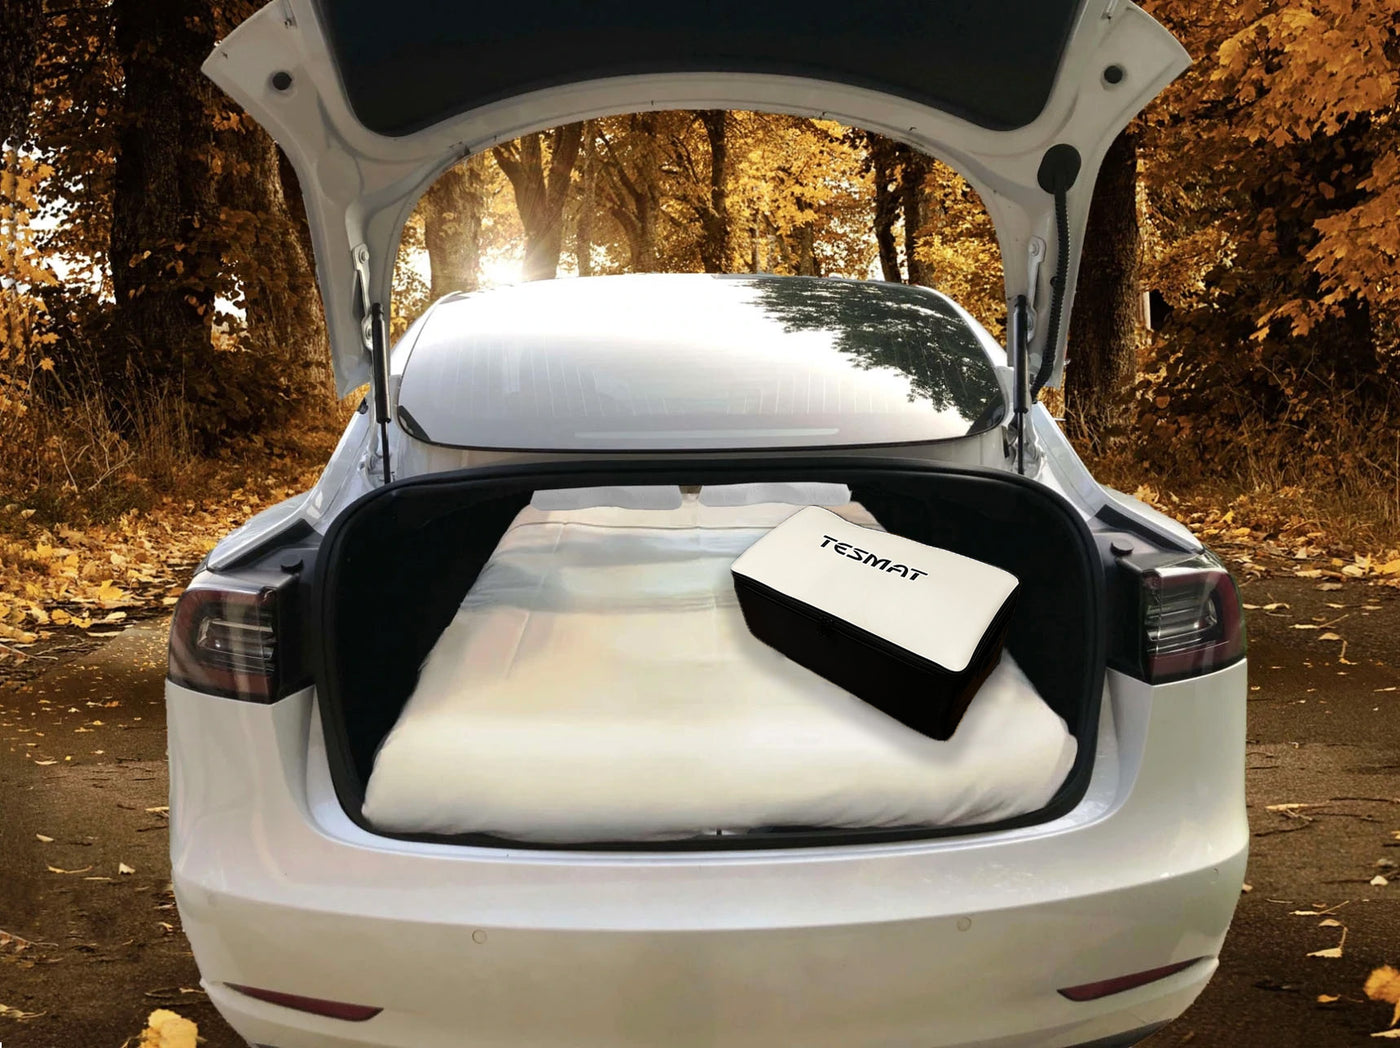 tesmat car camping mattress set up in tesla trunk